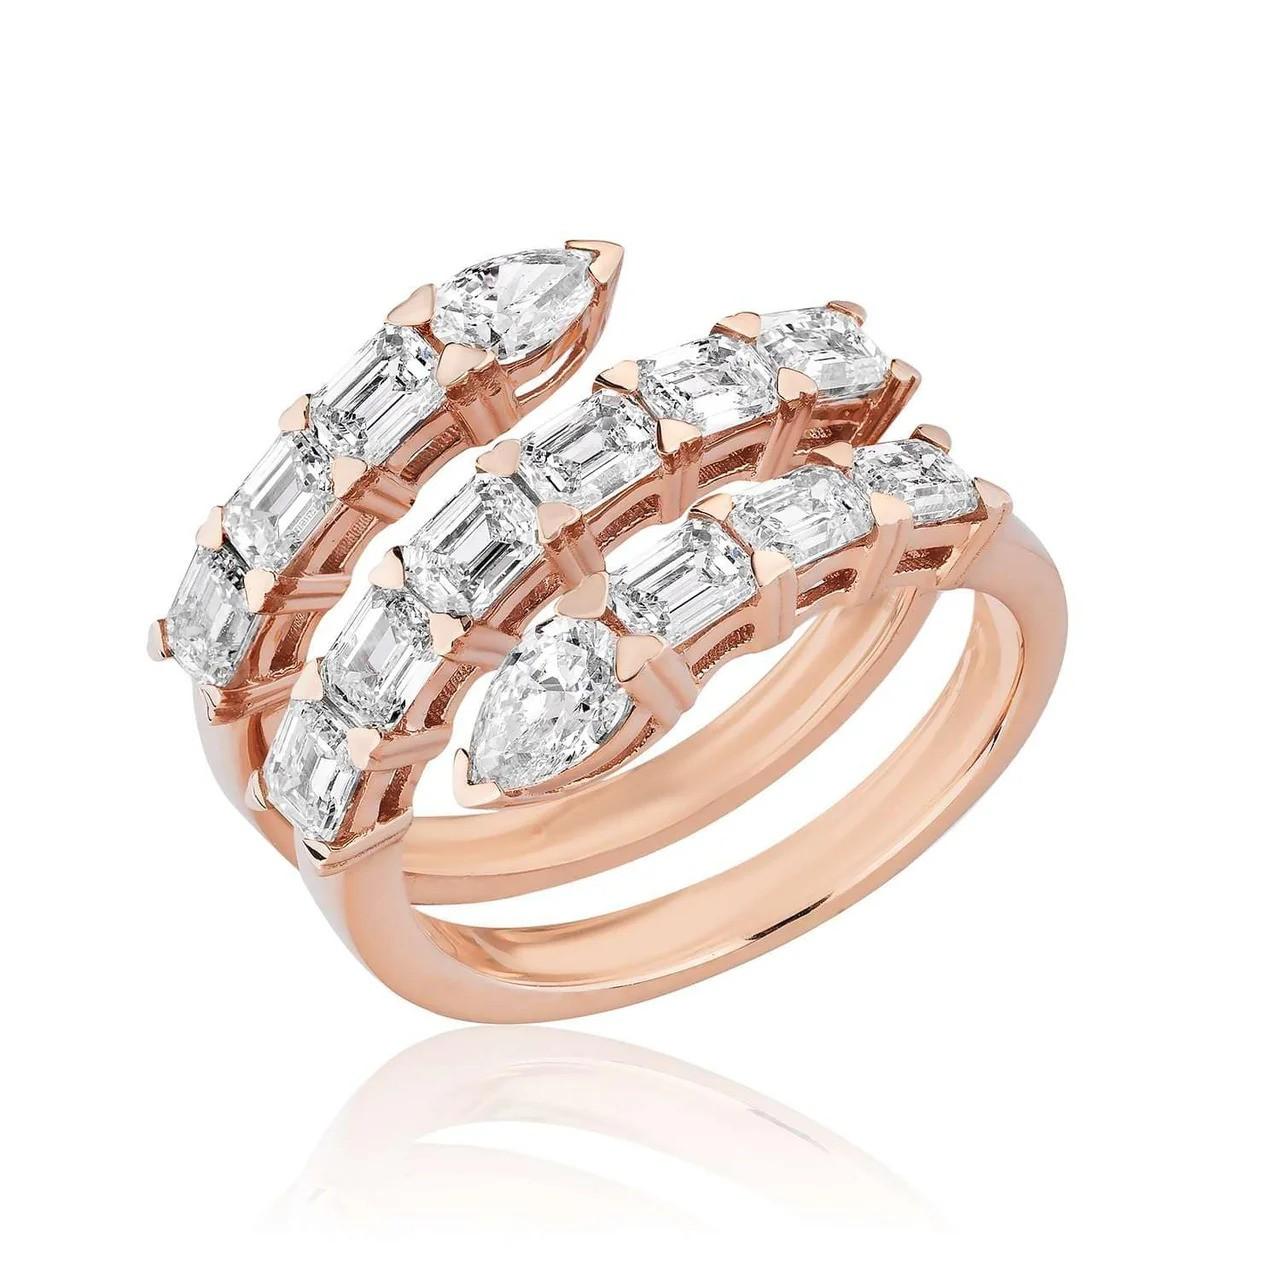 Presentamos nuestro exquisito Anillo Tachonado de Diamantes en Oro Rosa, una mezcla de elegancia atemporal y estilo contemporáneo que añade un toque de sofisticación a cualquier look. 
Elaborado en lujoso oro rosa de 18 quilates, este anillo